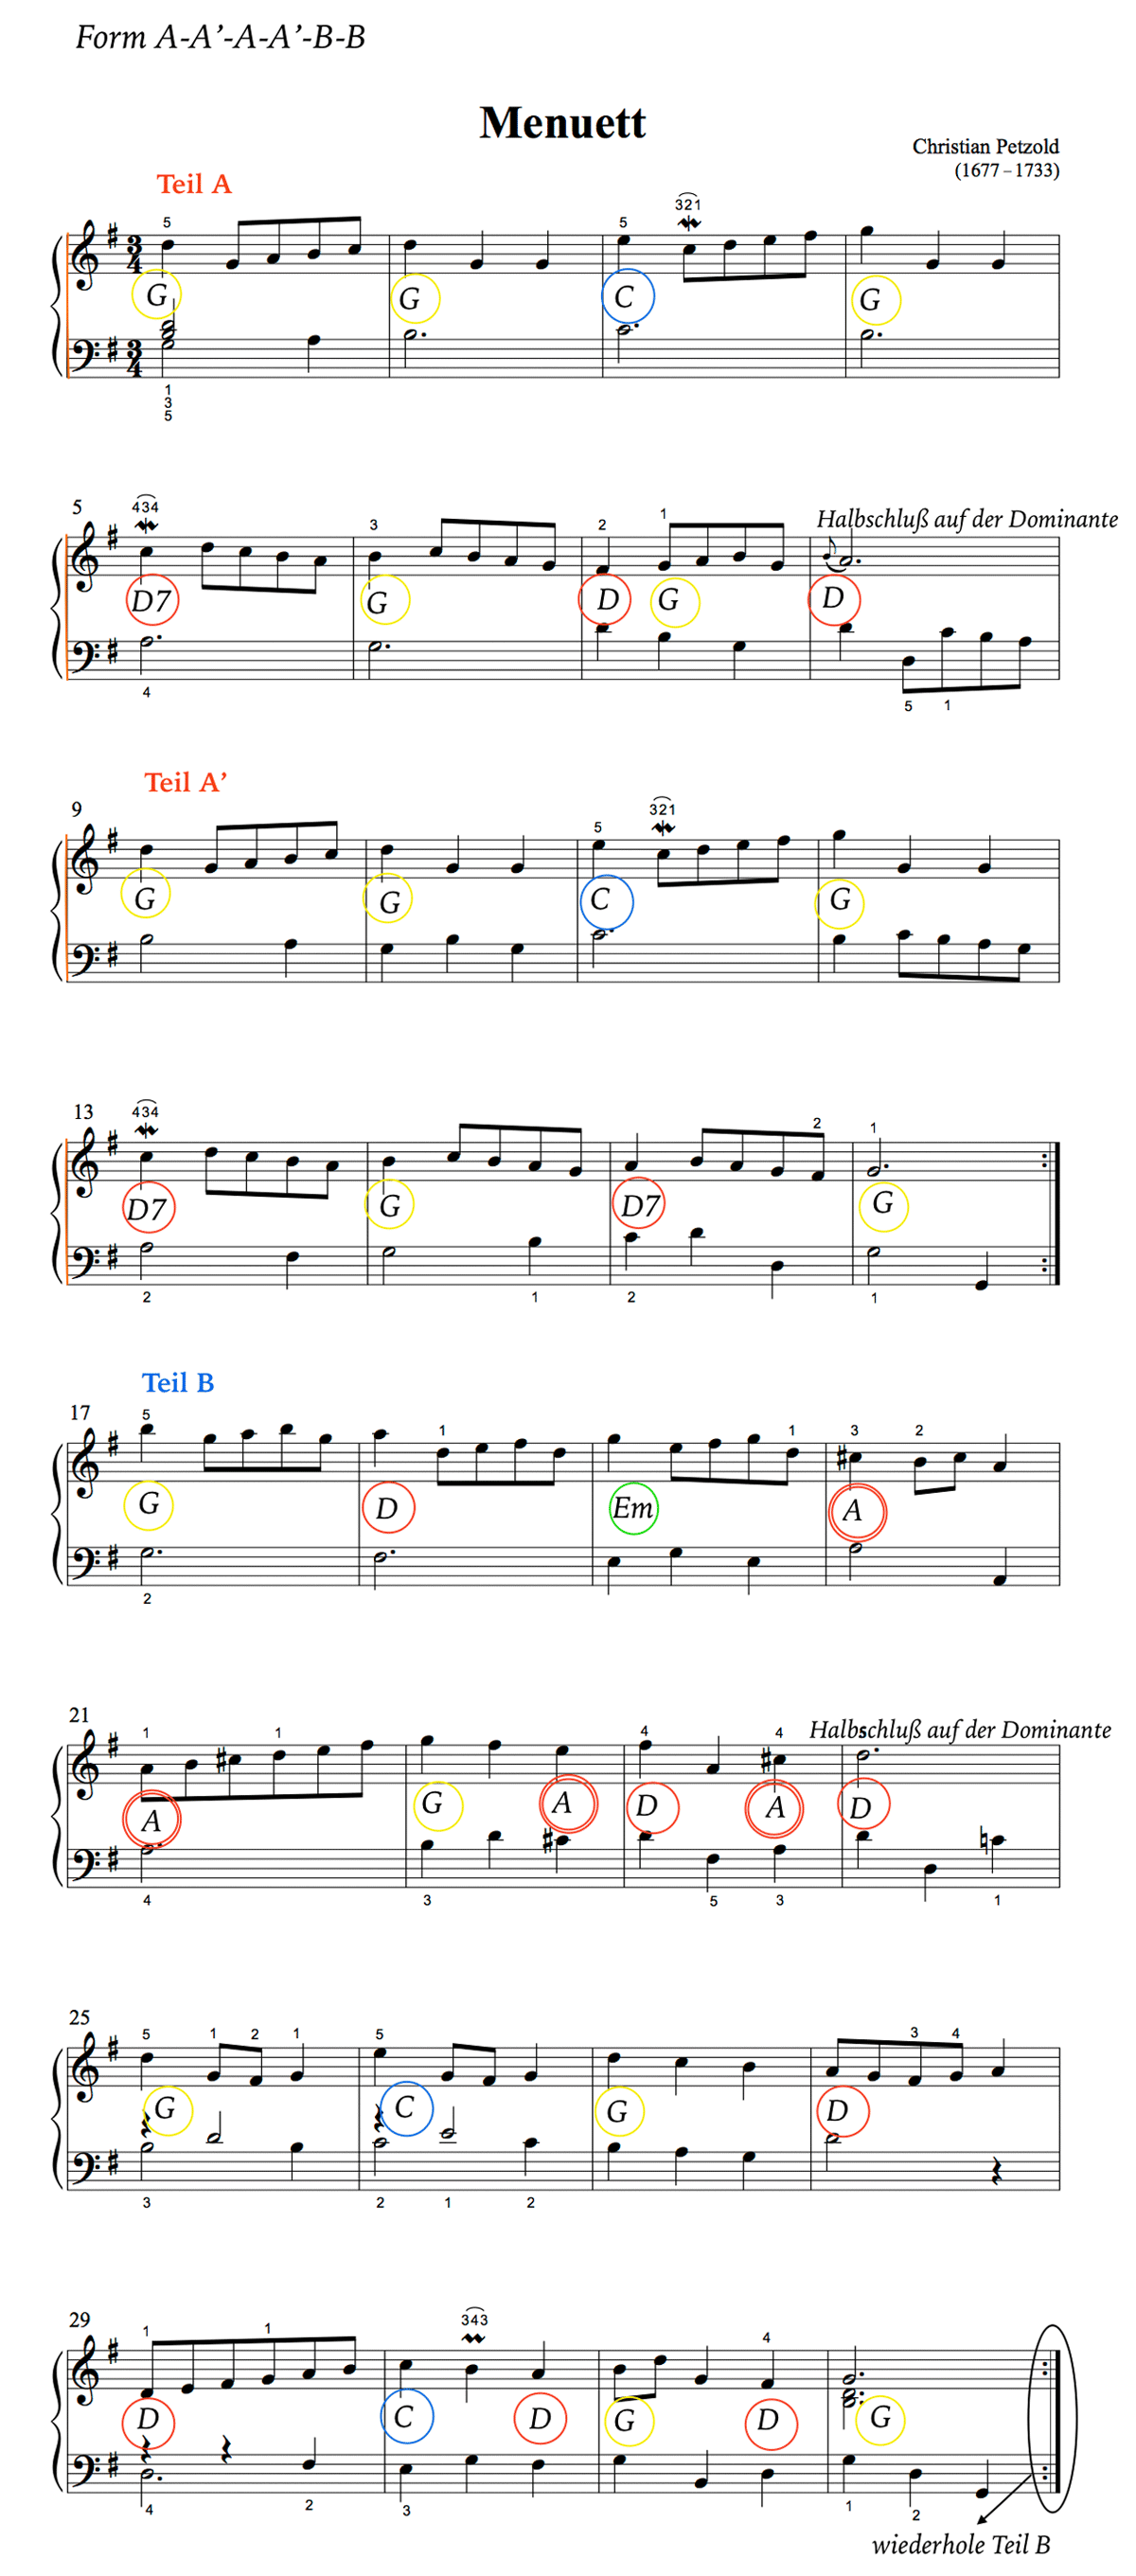 Form und Harmonie von Chr. Petzold: Menuett in G-Dur